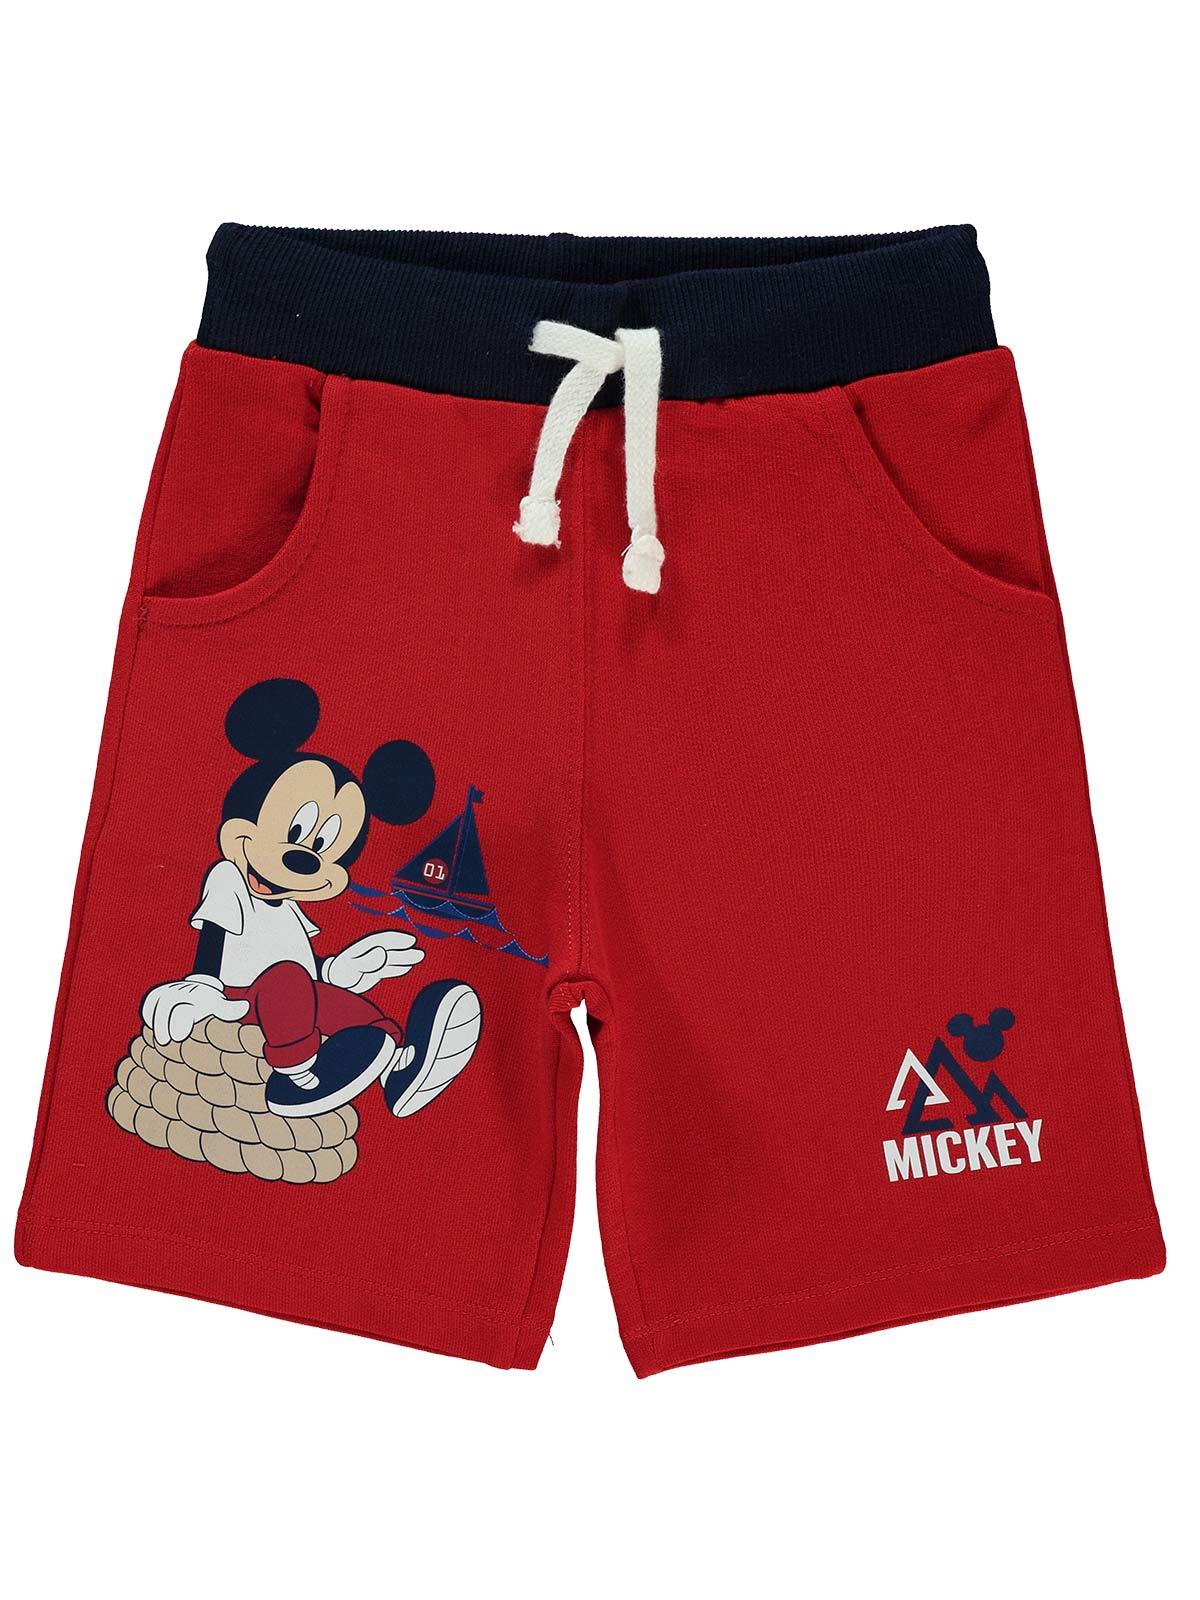 Mickey Mouse Erkek Çocuk Şort 3-7 Yaş Kırmızı